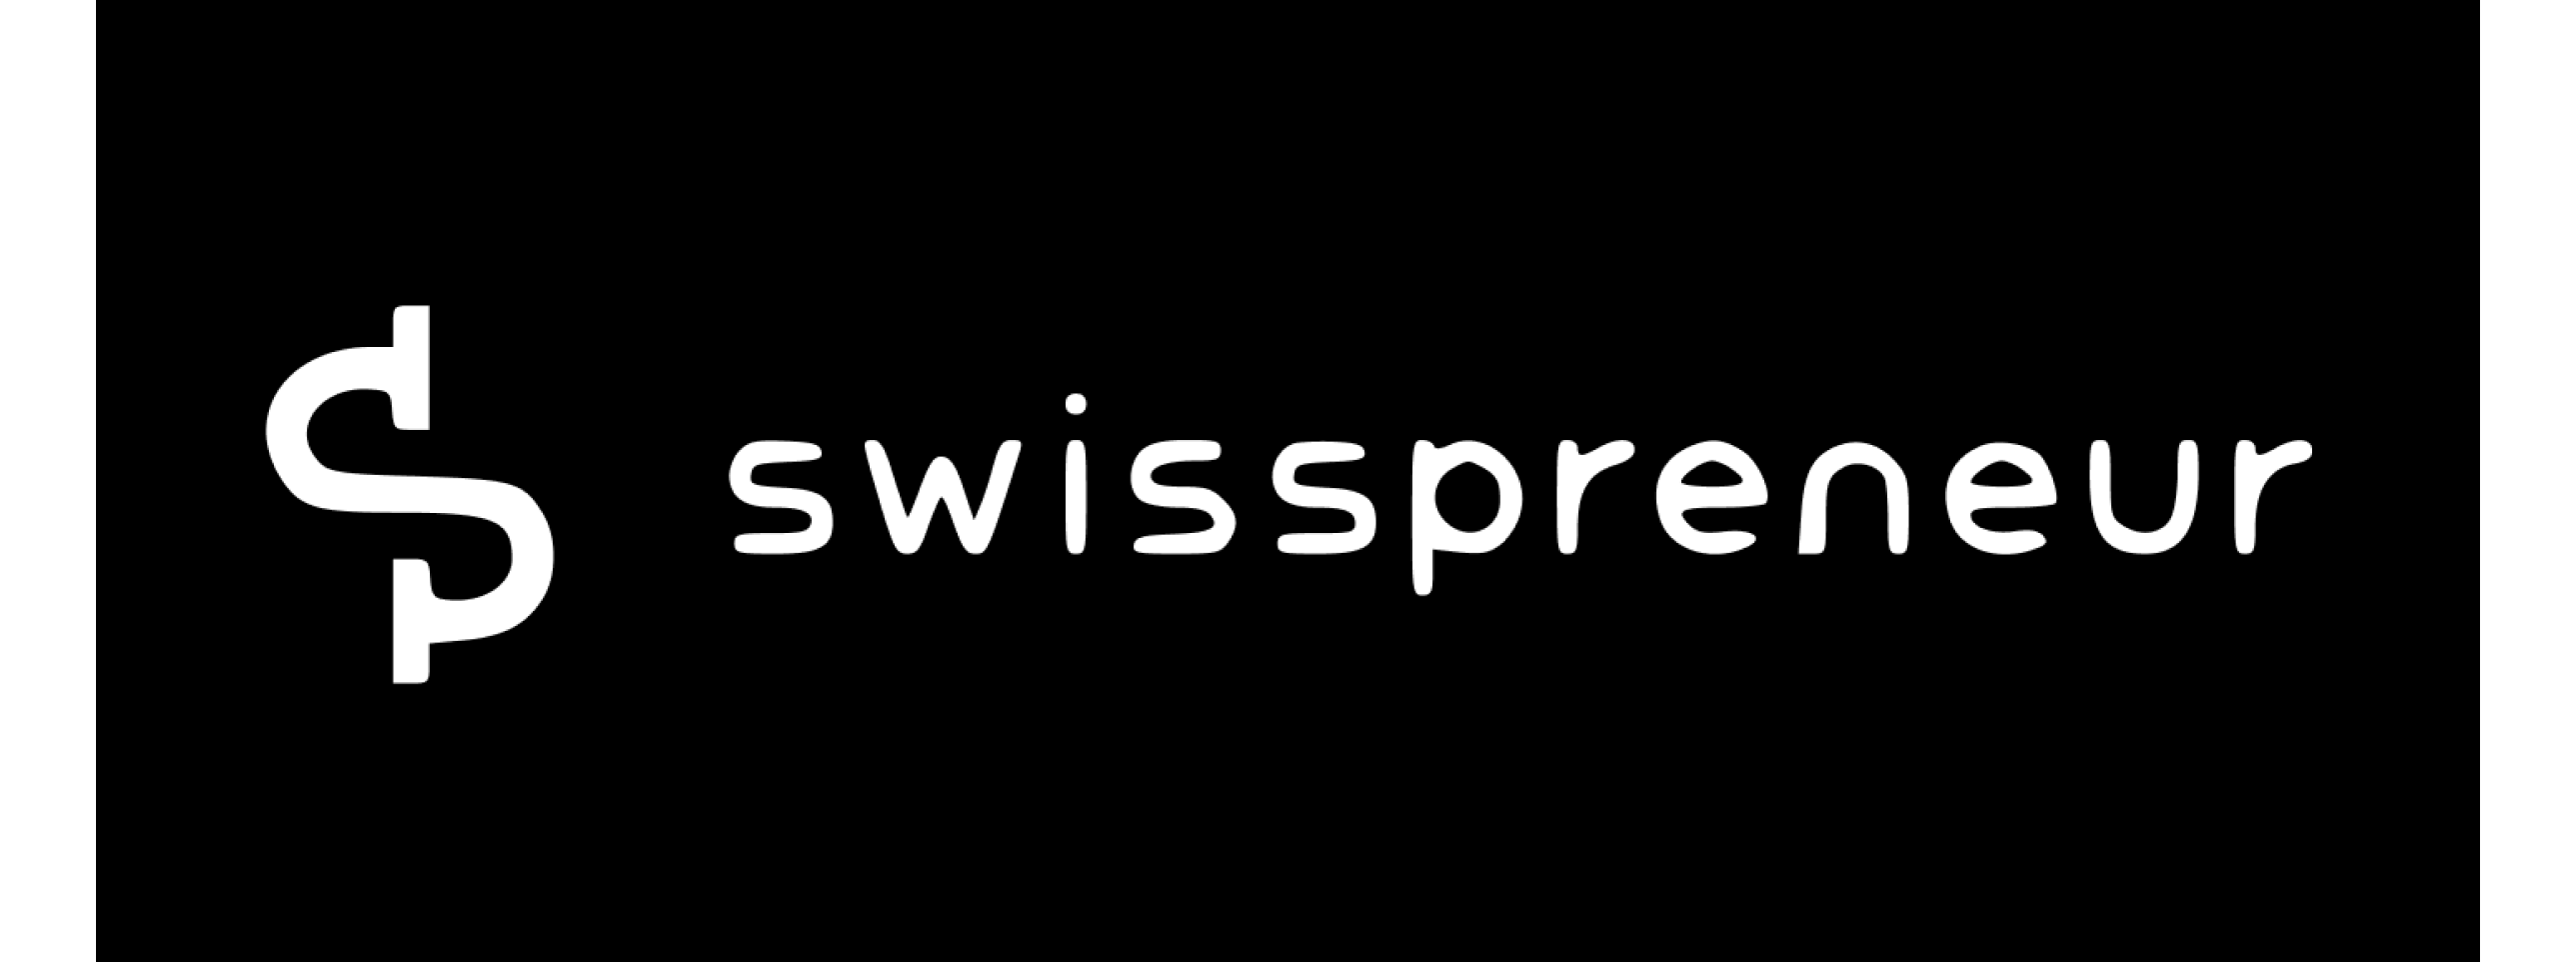 Swisspreneur